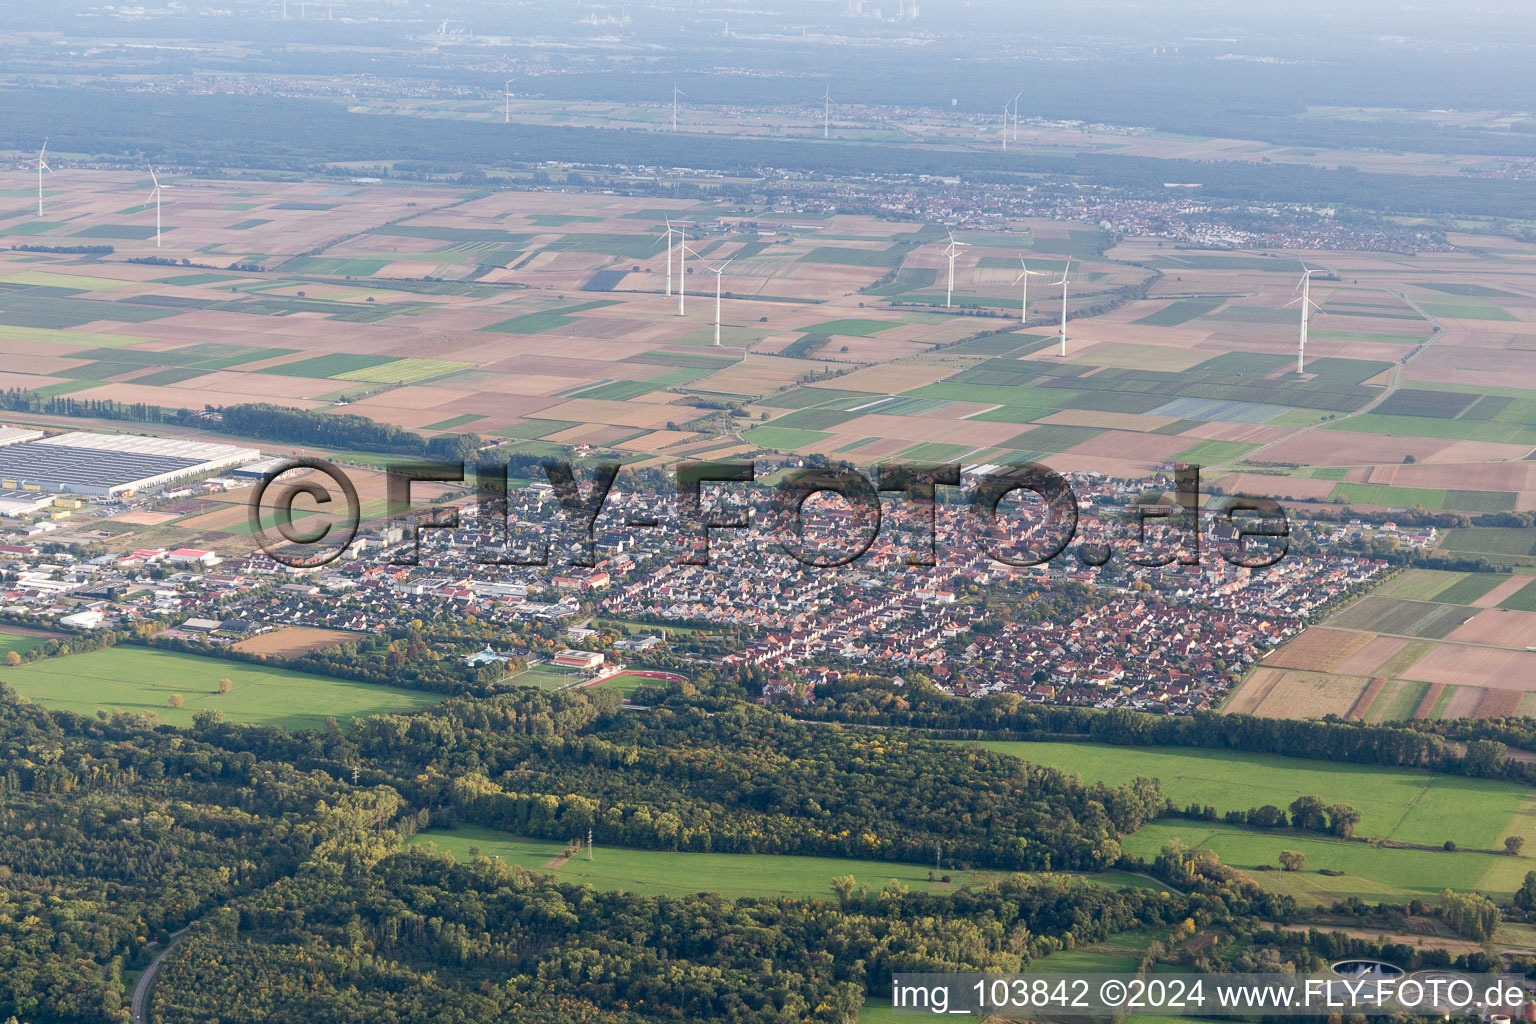 Offenbach an der Queich im Bundesland Rheinland-Pfalz, Deutschland aus der Drohnenperspektive